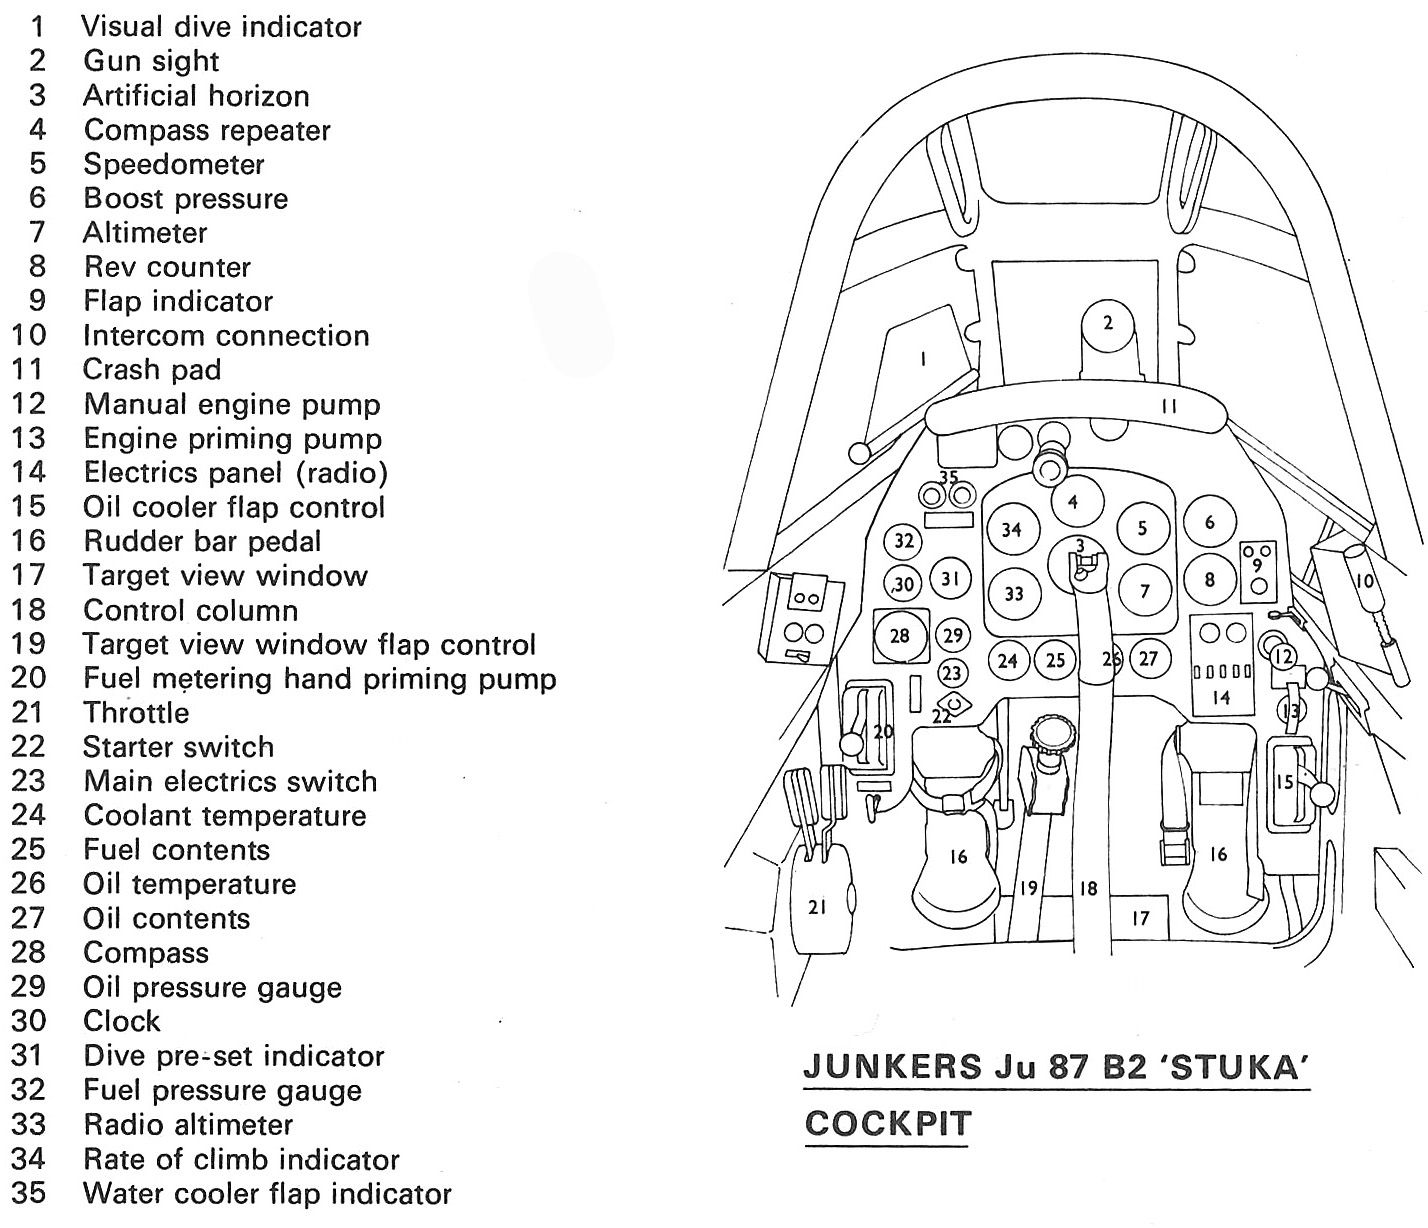 ACS-Stuka-Cockpit (1).jpg